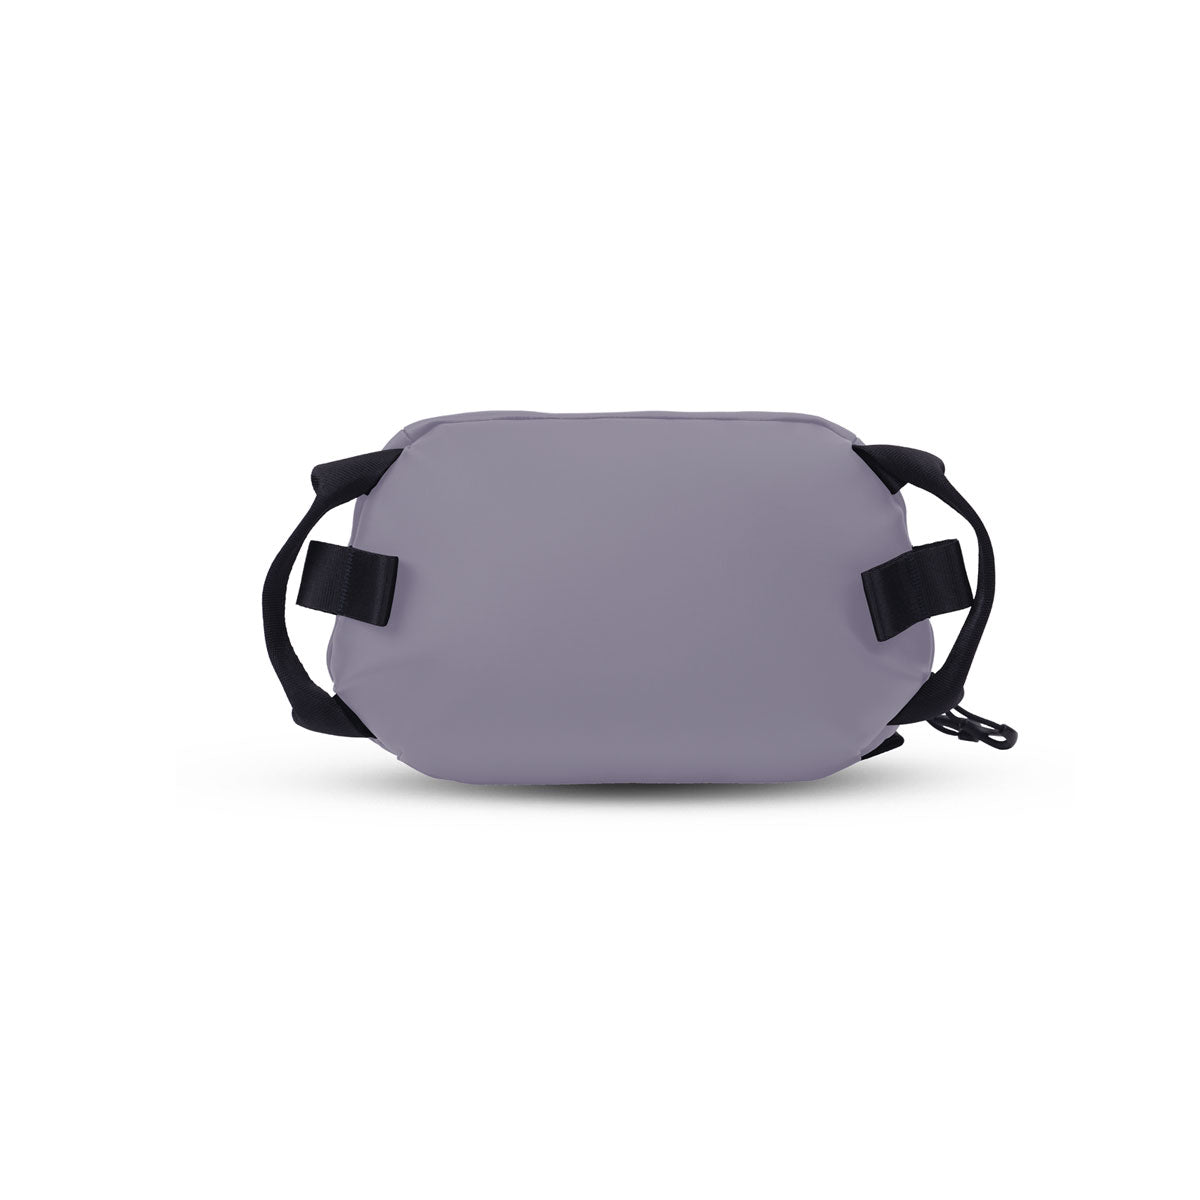 Wandrd : Tech Pouch Large : Uyuni Purple